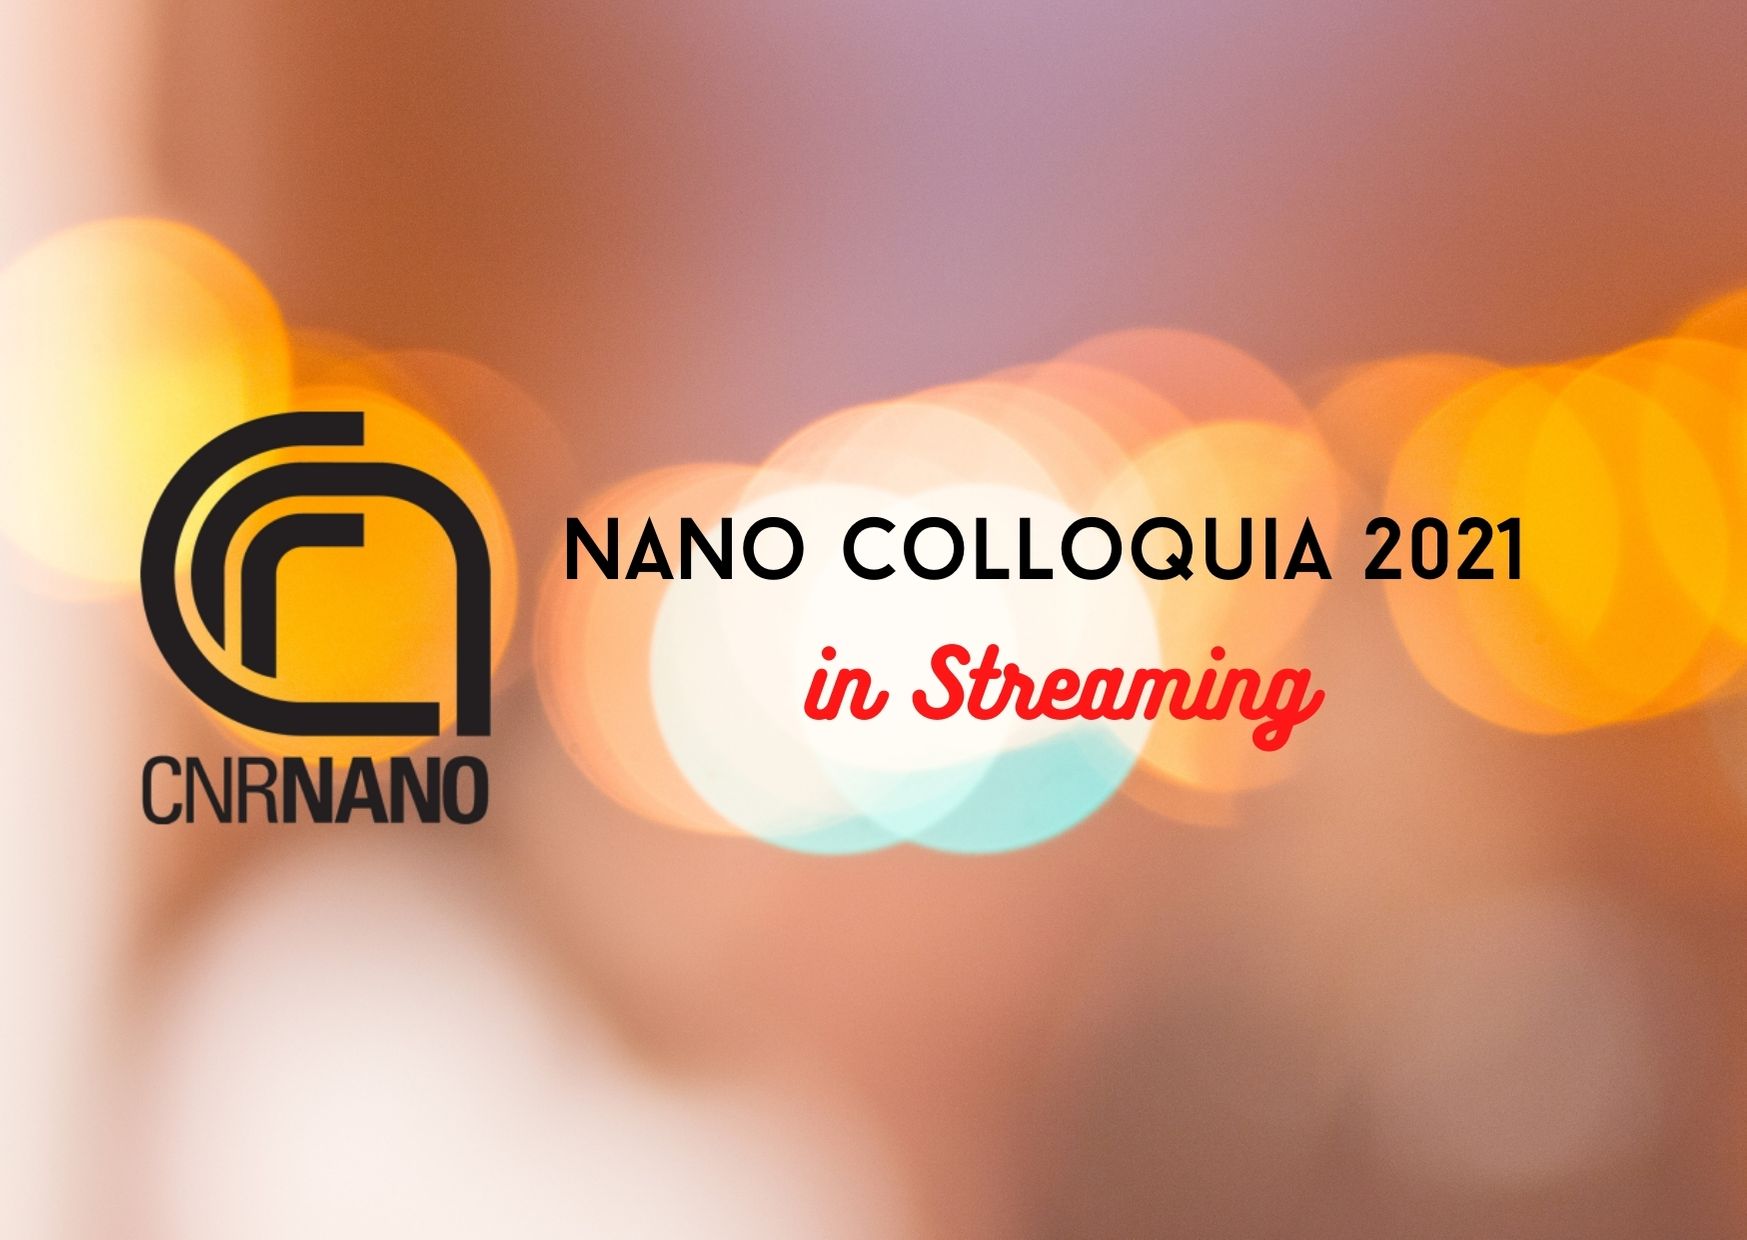 NANO Colloquia 2021 in streaming - Riccardo Nifosì Seminar